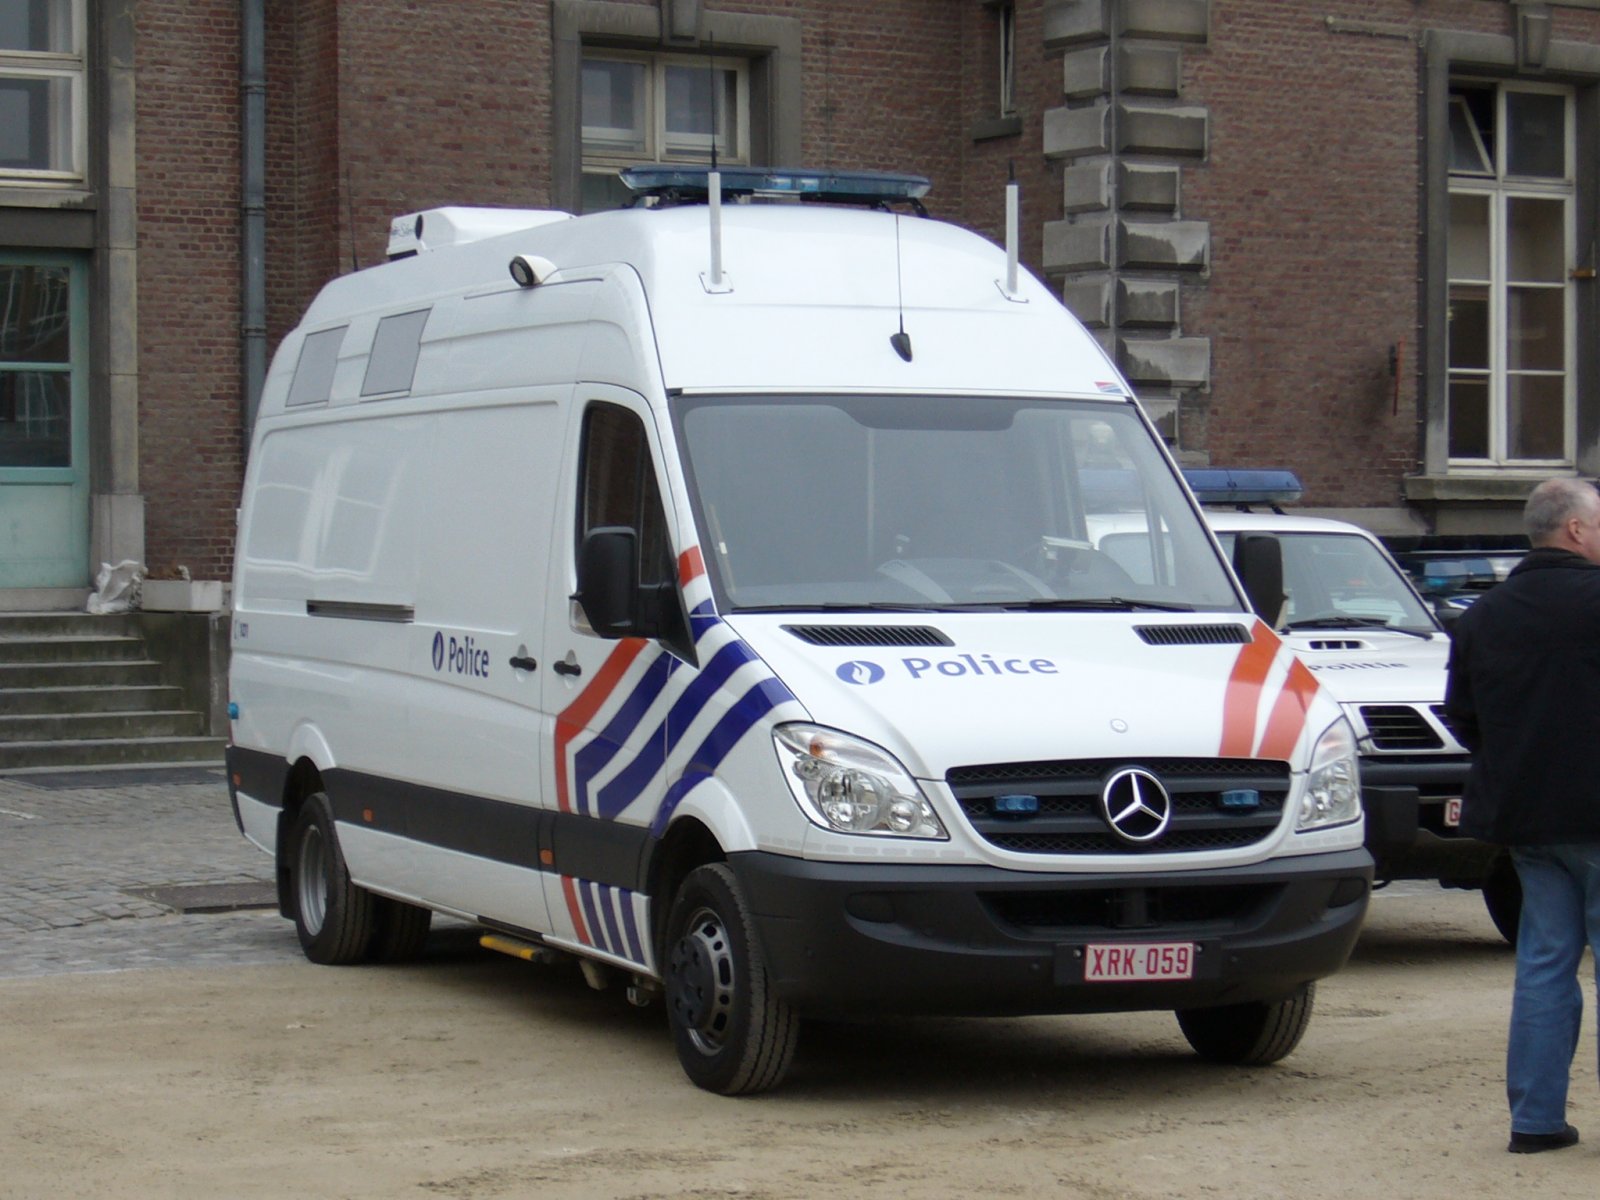 Police fédérale : nouveau véhicule de commandement 643a155a98